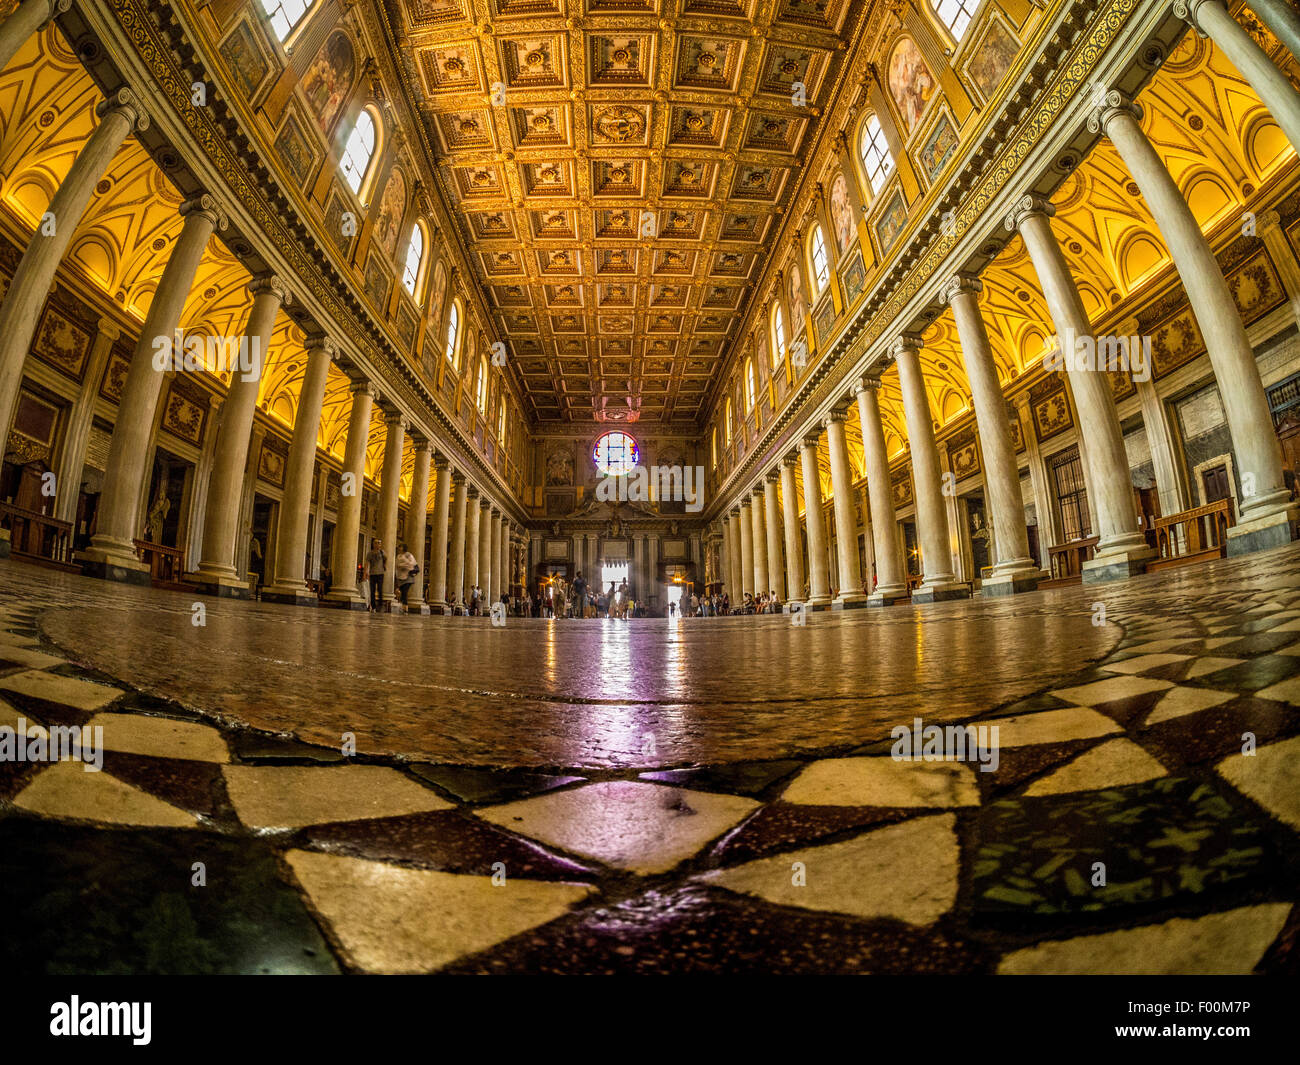 Lente de ojo de pez de piso de nave ornamentada y techo de la Basílica de Santa Maria Maggiore. Roma. Italia. Foto de stock